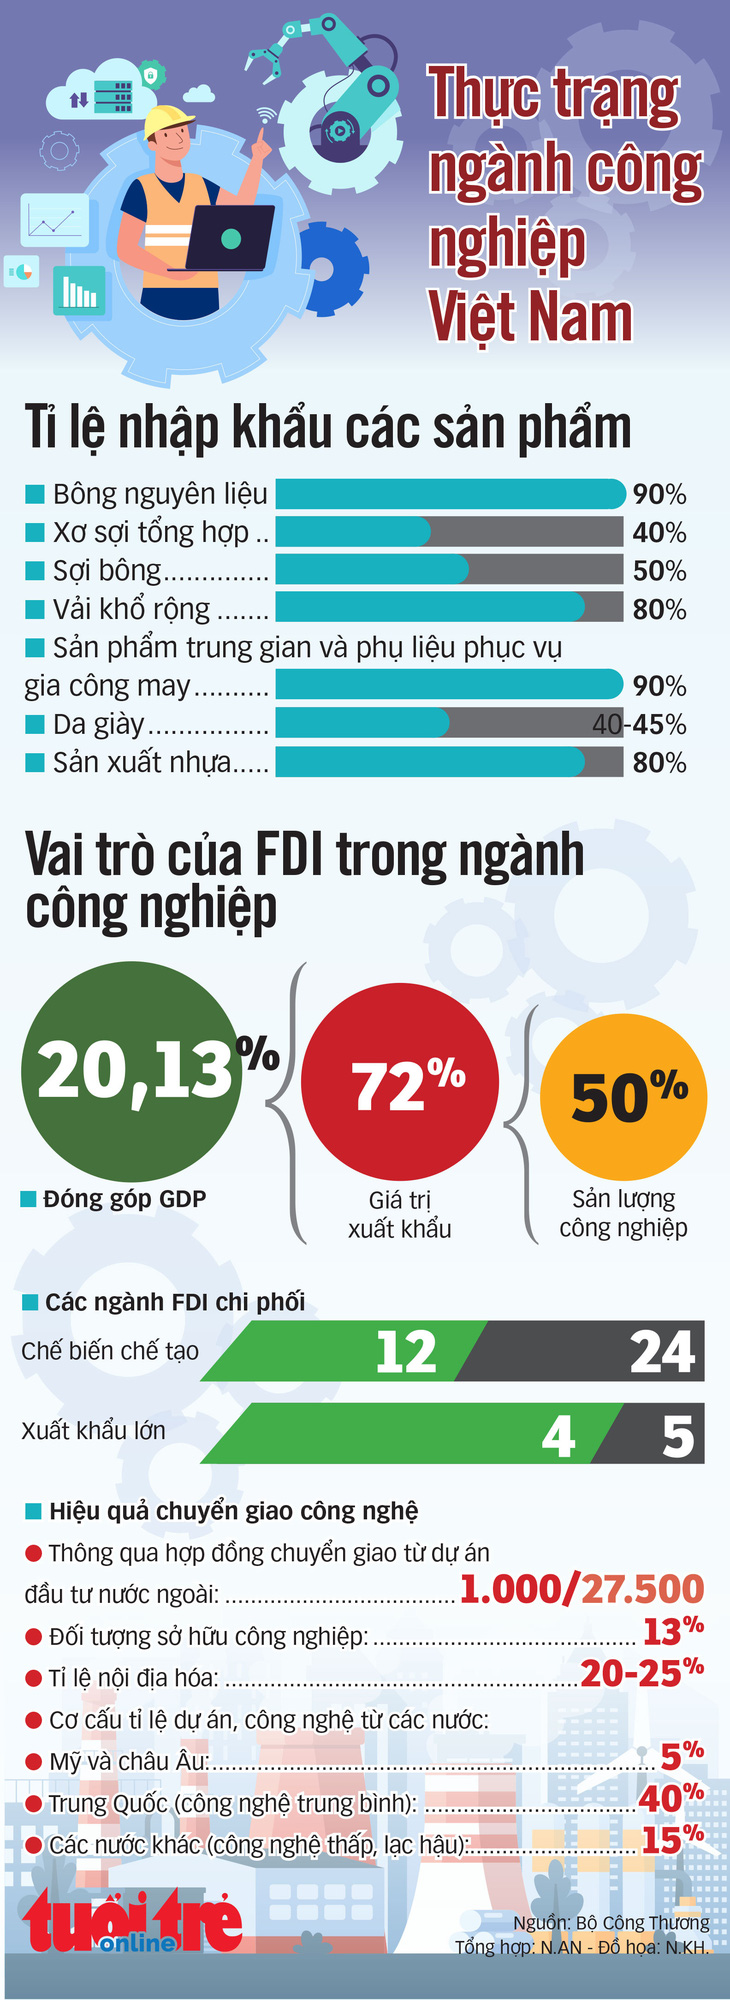 Vai trò khu vực FDI và thực trạng một số ngành công nghiệp Việt - Ảnh 1.